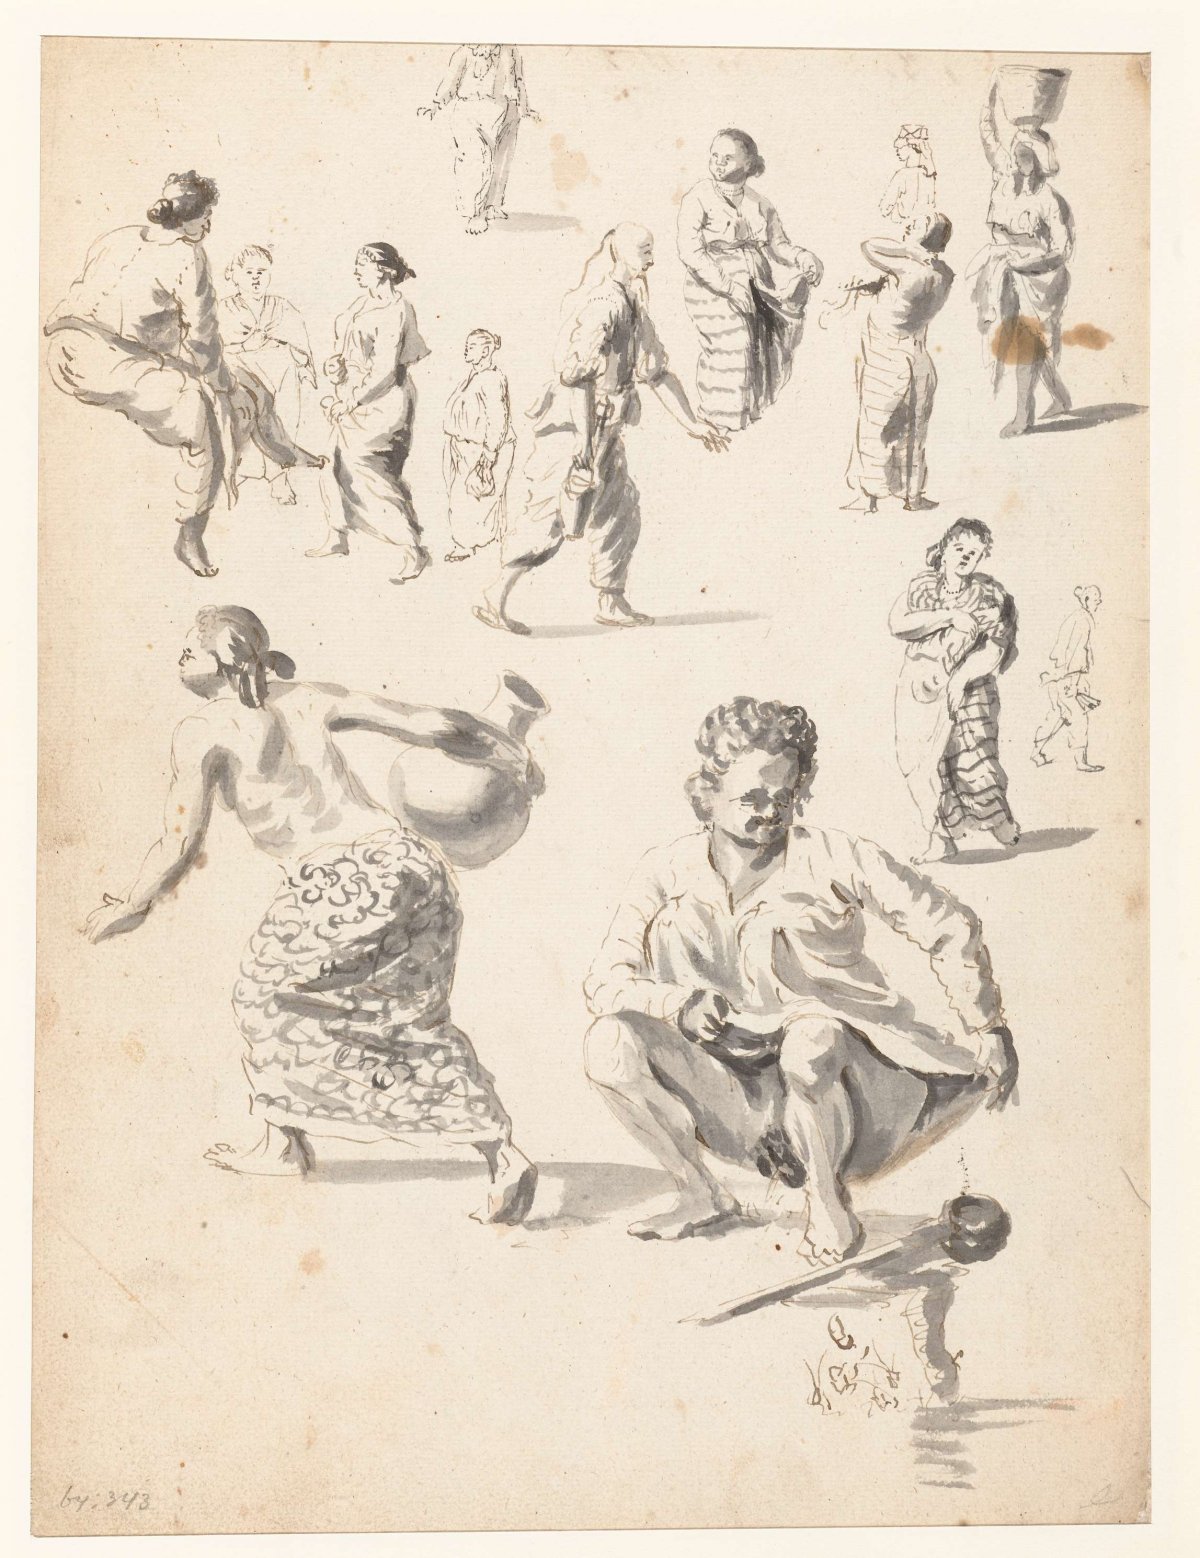 Studies of women, Wouter Schouten, c. 1660